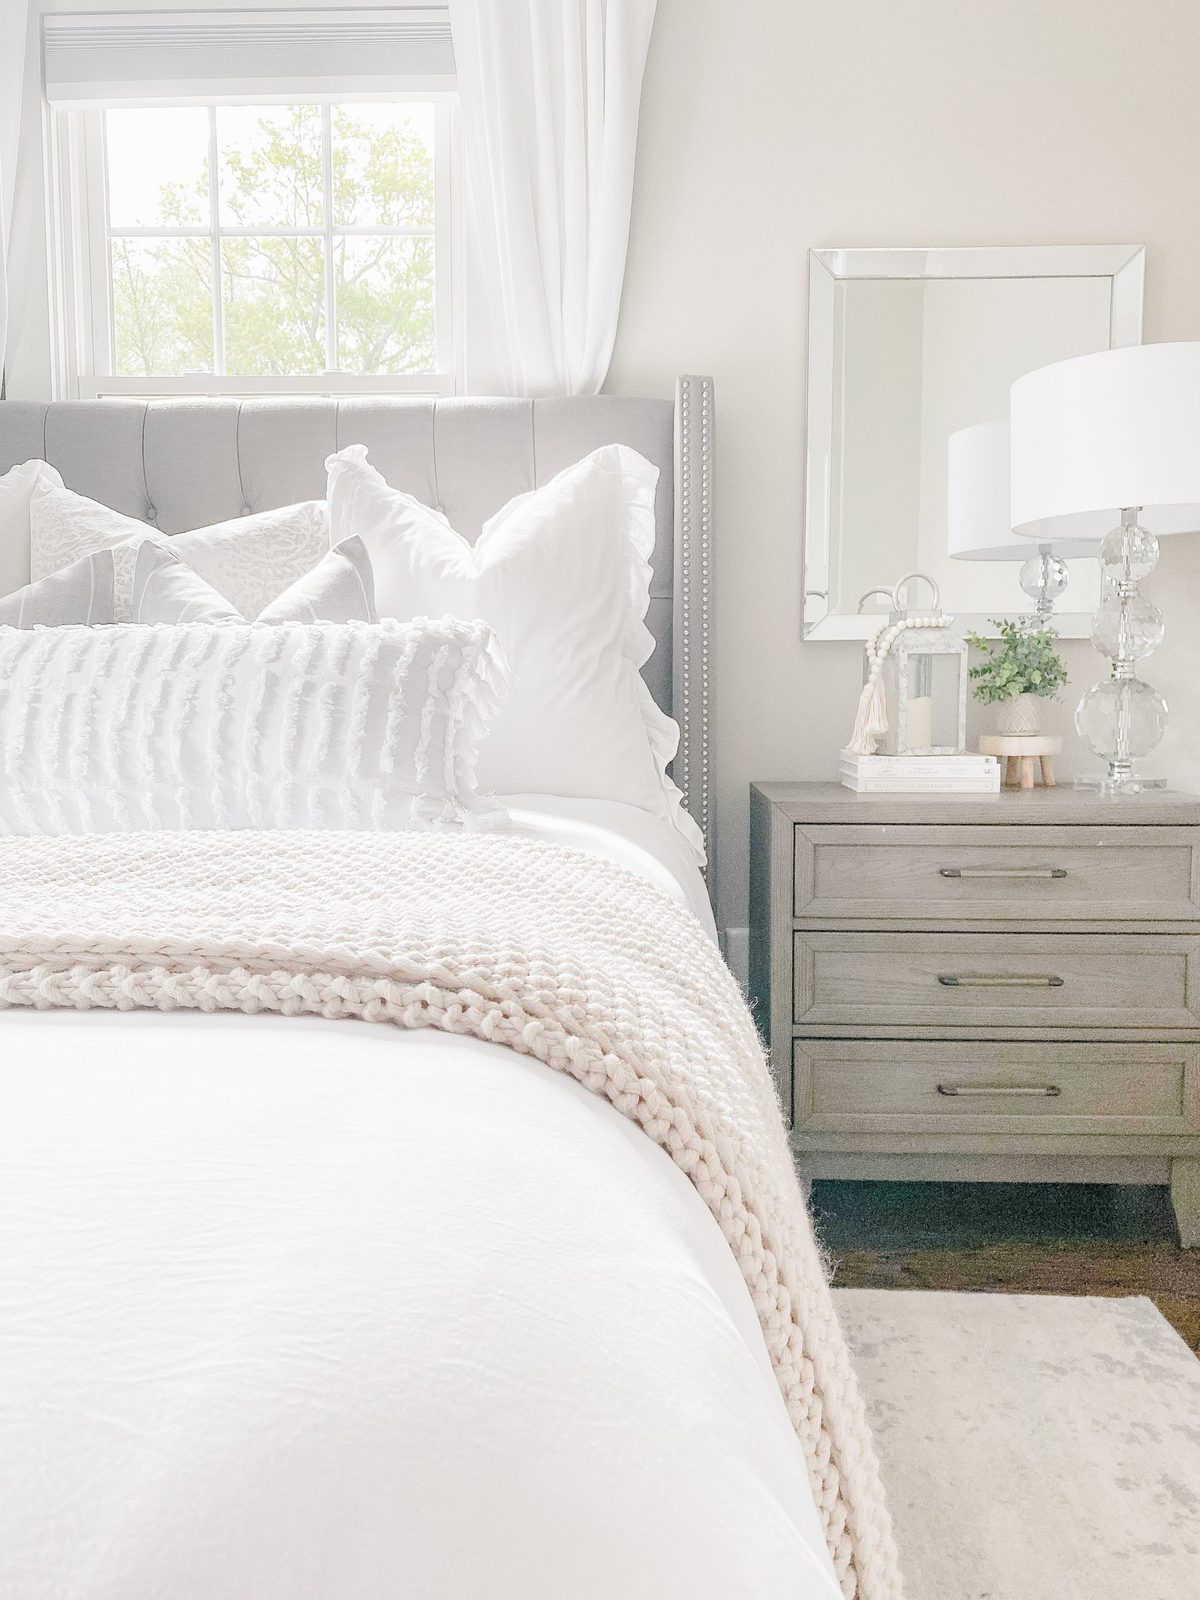 white textured lumbar pillow, grey and white striped farmhouse pillow 20x20, white ruffle euro pillows, farmhouse glam bedroom